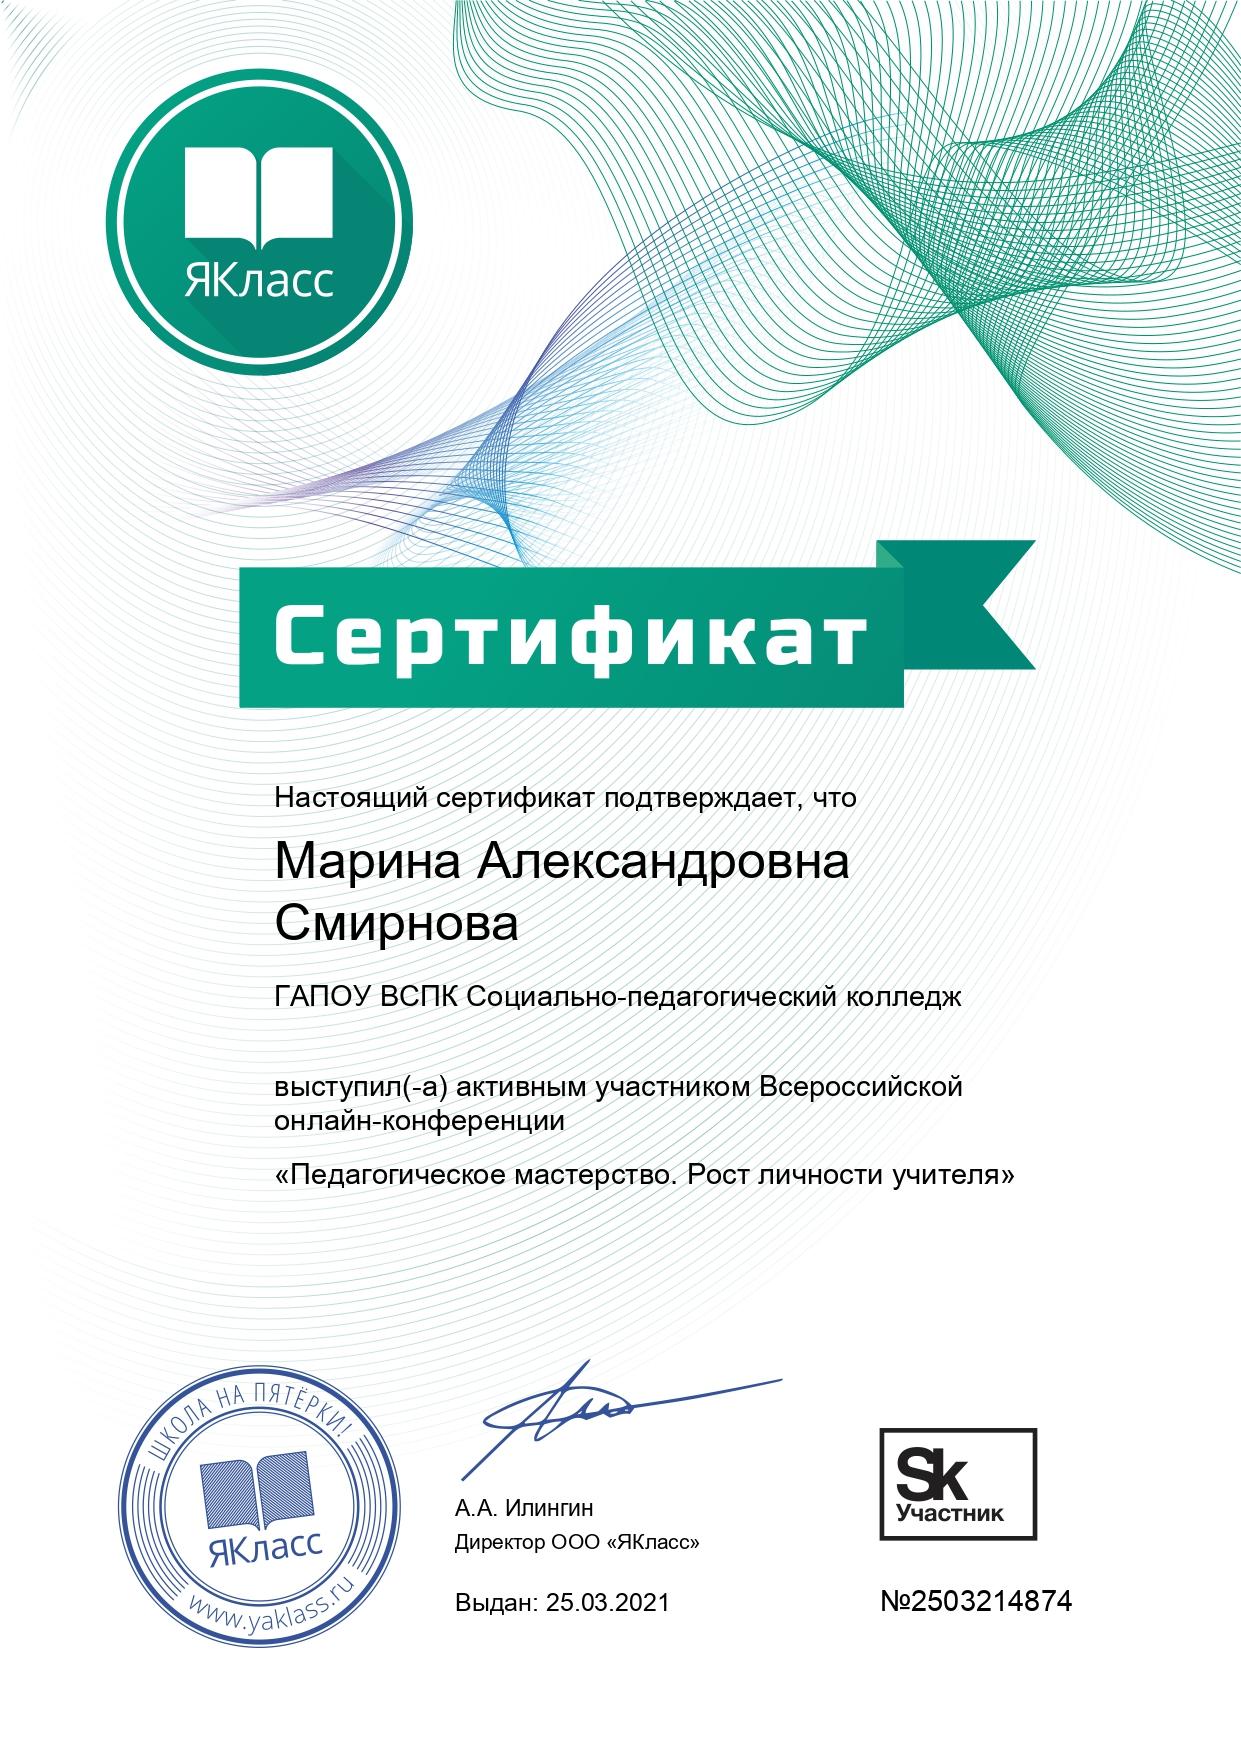 Сертификат Всероссийской онлайн-конференции_page-0001.jpg